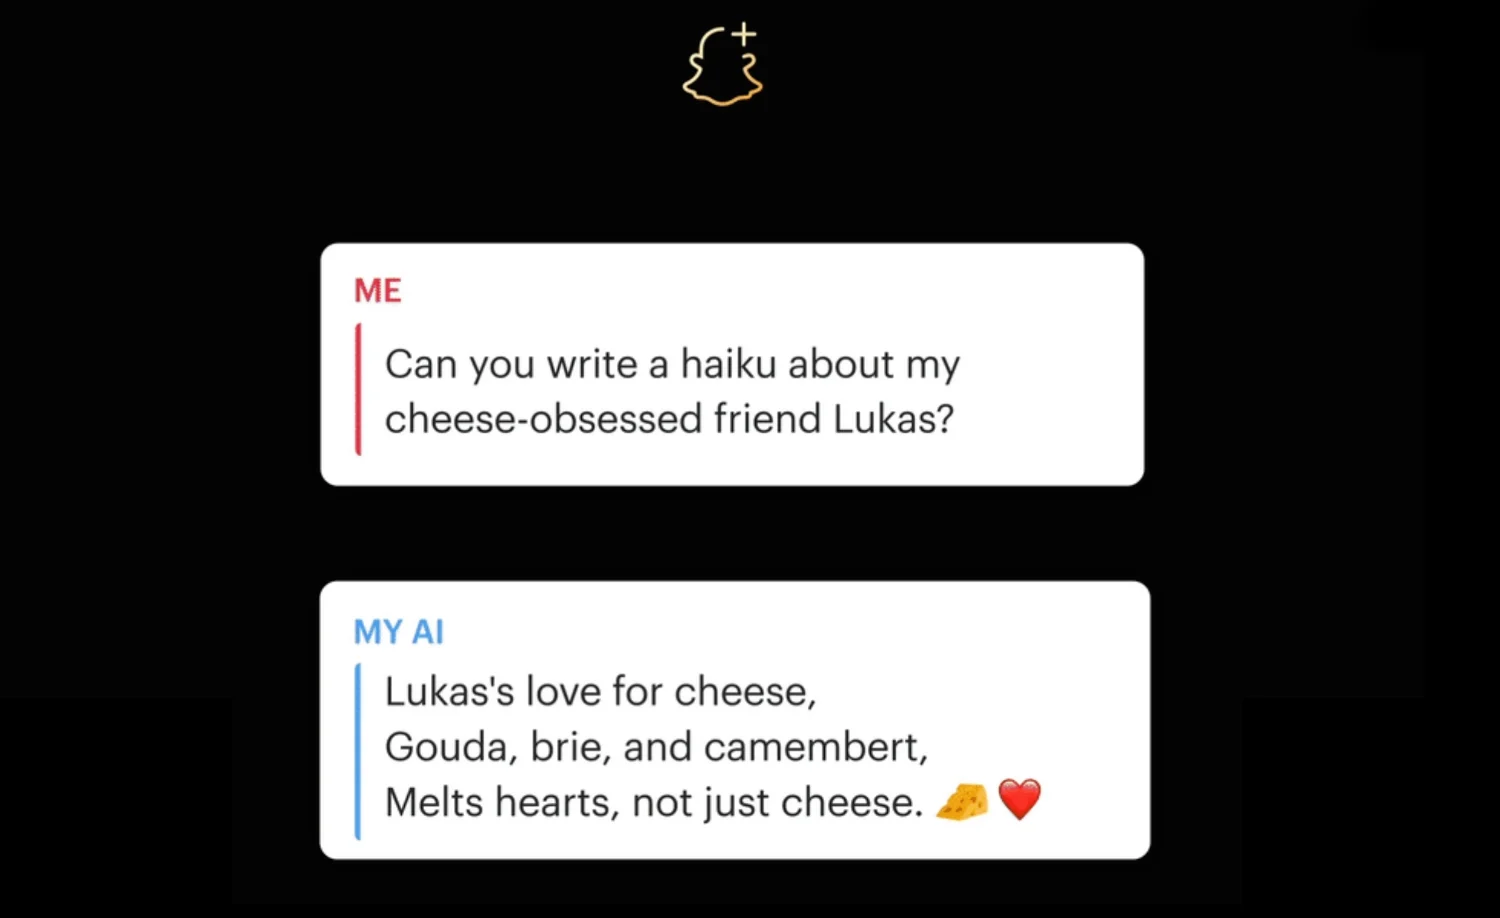 Üstte Snapchat+ logosu olan siyah ekran. Ortada iki beyaz sohbet kutusu var. İlk balon, AI'dan Lukas adında bir arkadaş hakkında bir haiku yazmasını ister; ikinci balon, My AI'nın peynir sevgisi hakkında kısa bir haiku ile verdiği yanıttır.